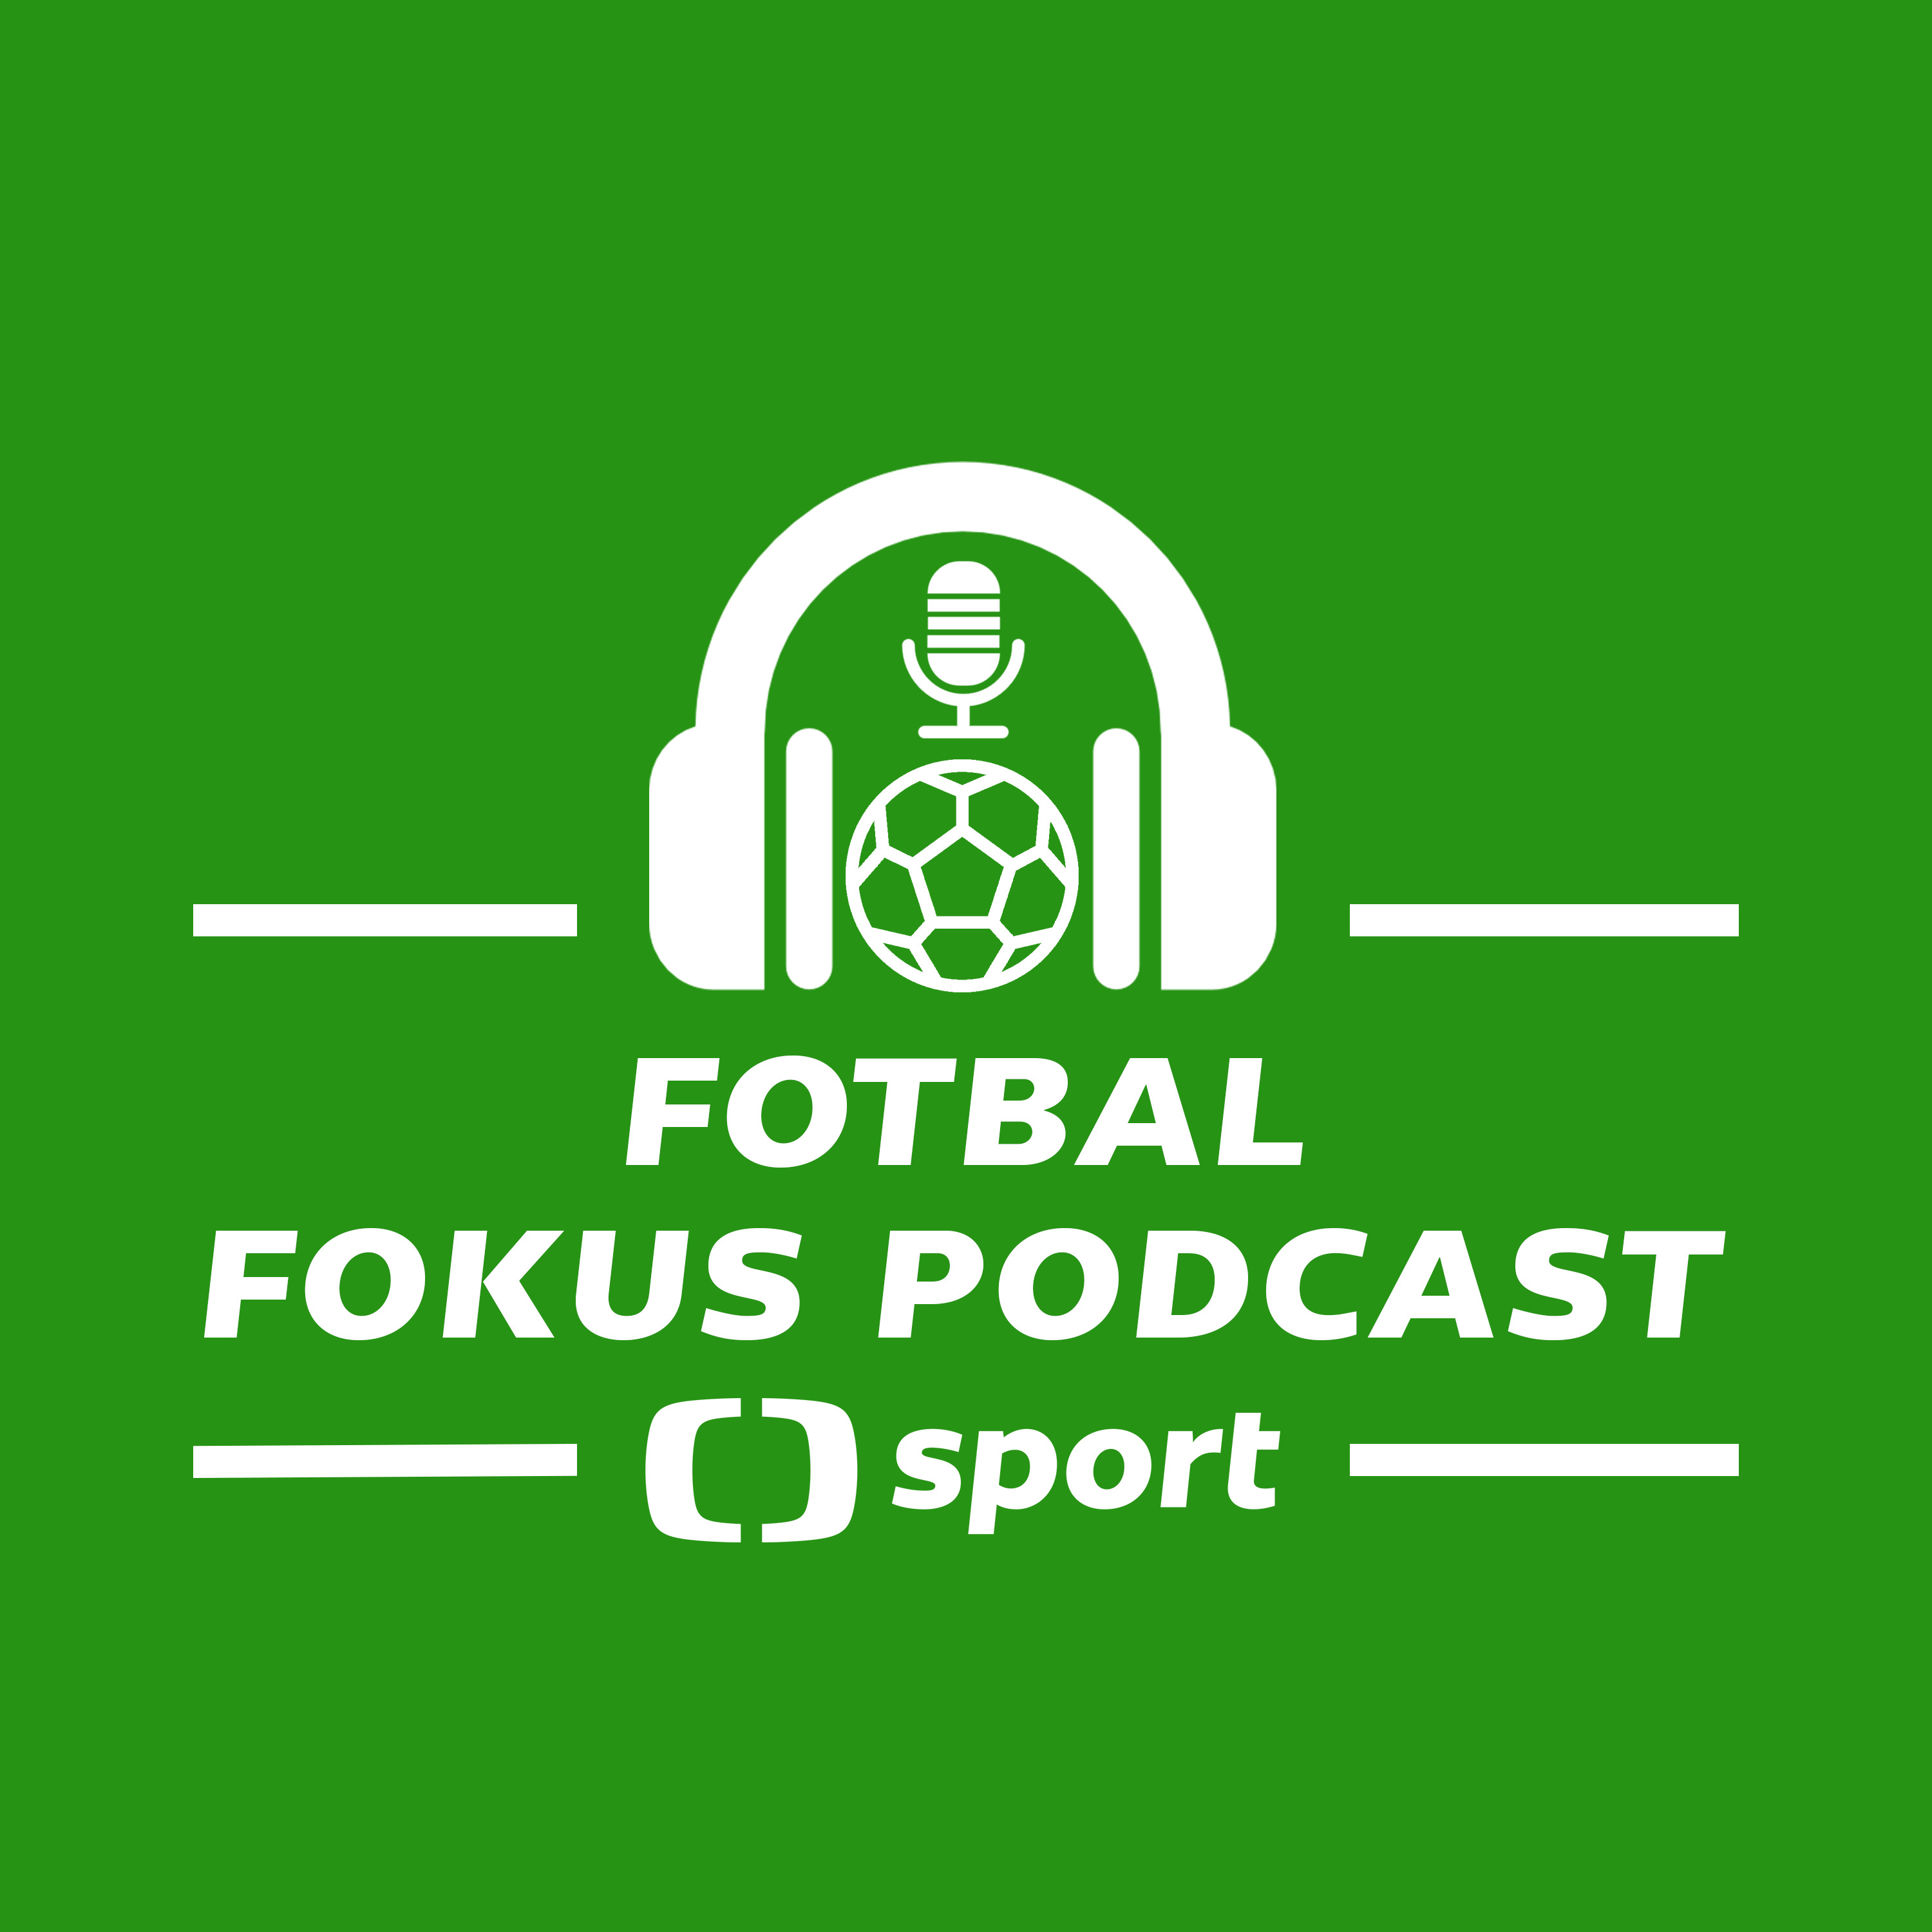 Fotbal fokus podcast: Kauza Hložek. Odchod z Leverkusenu? Krejčí do Girony? A co Vitík?